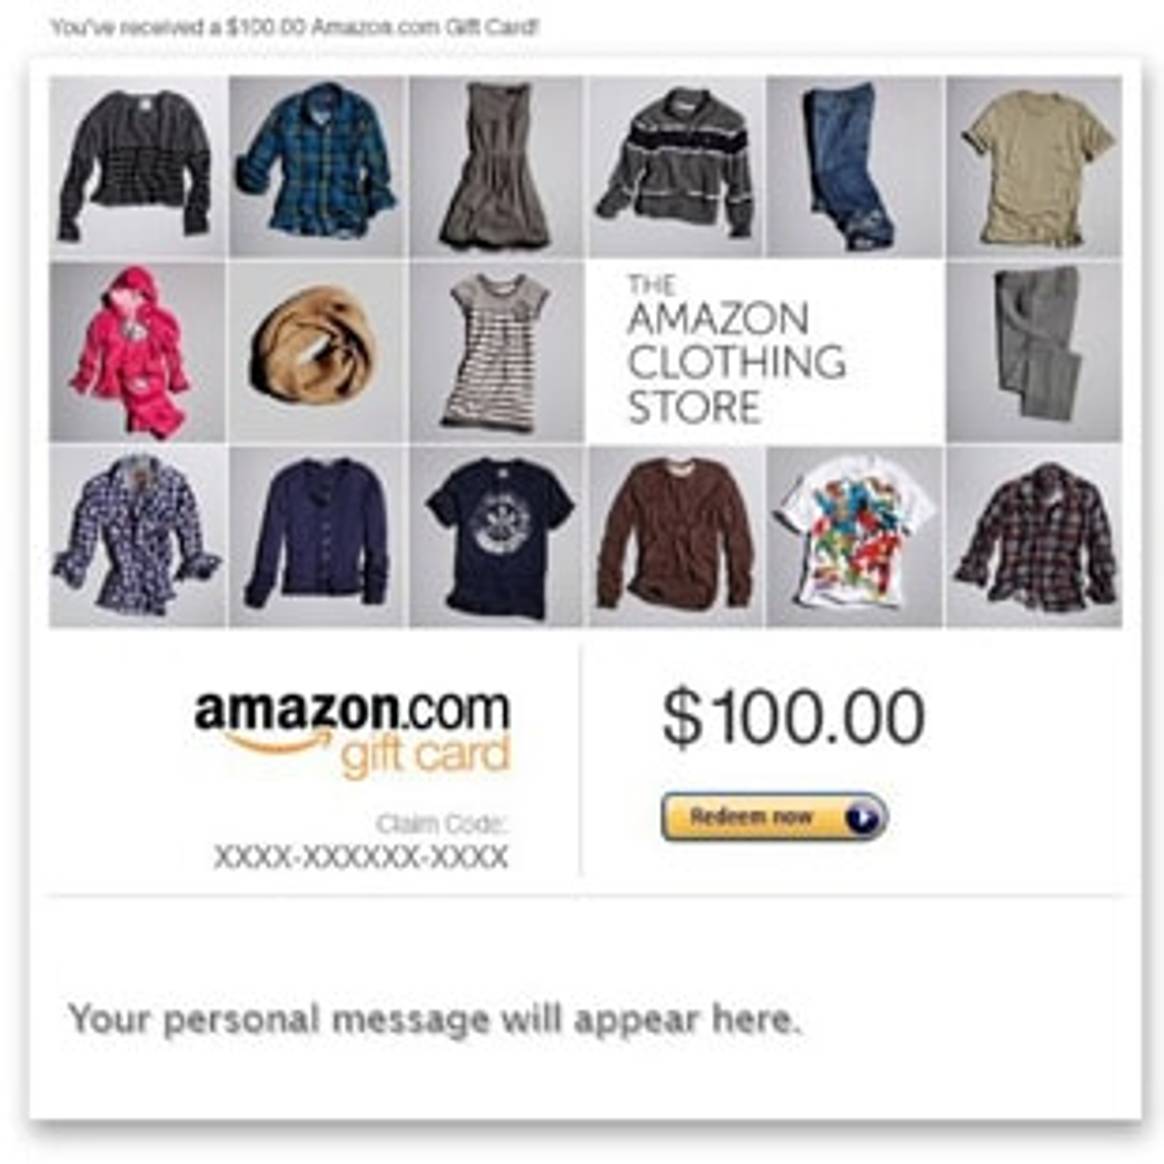 Amazon ведет переговоры с крупными fashion-ритейлерами